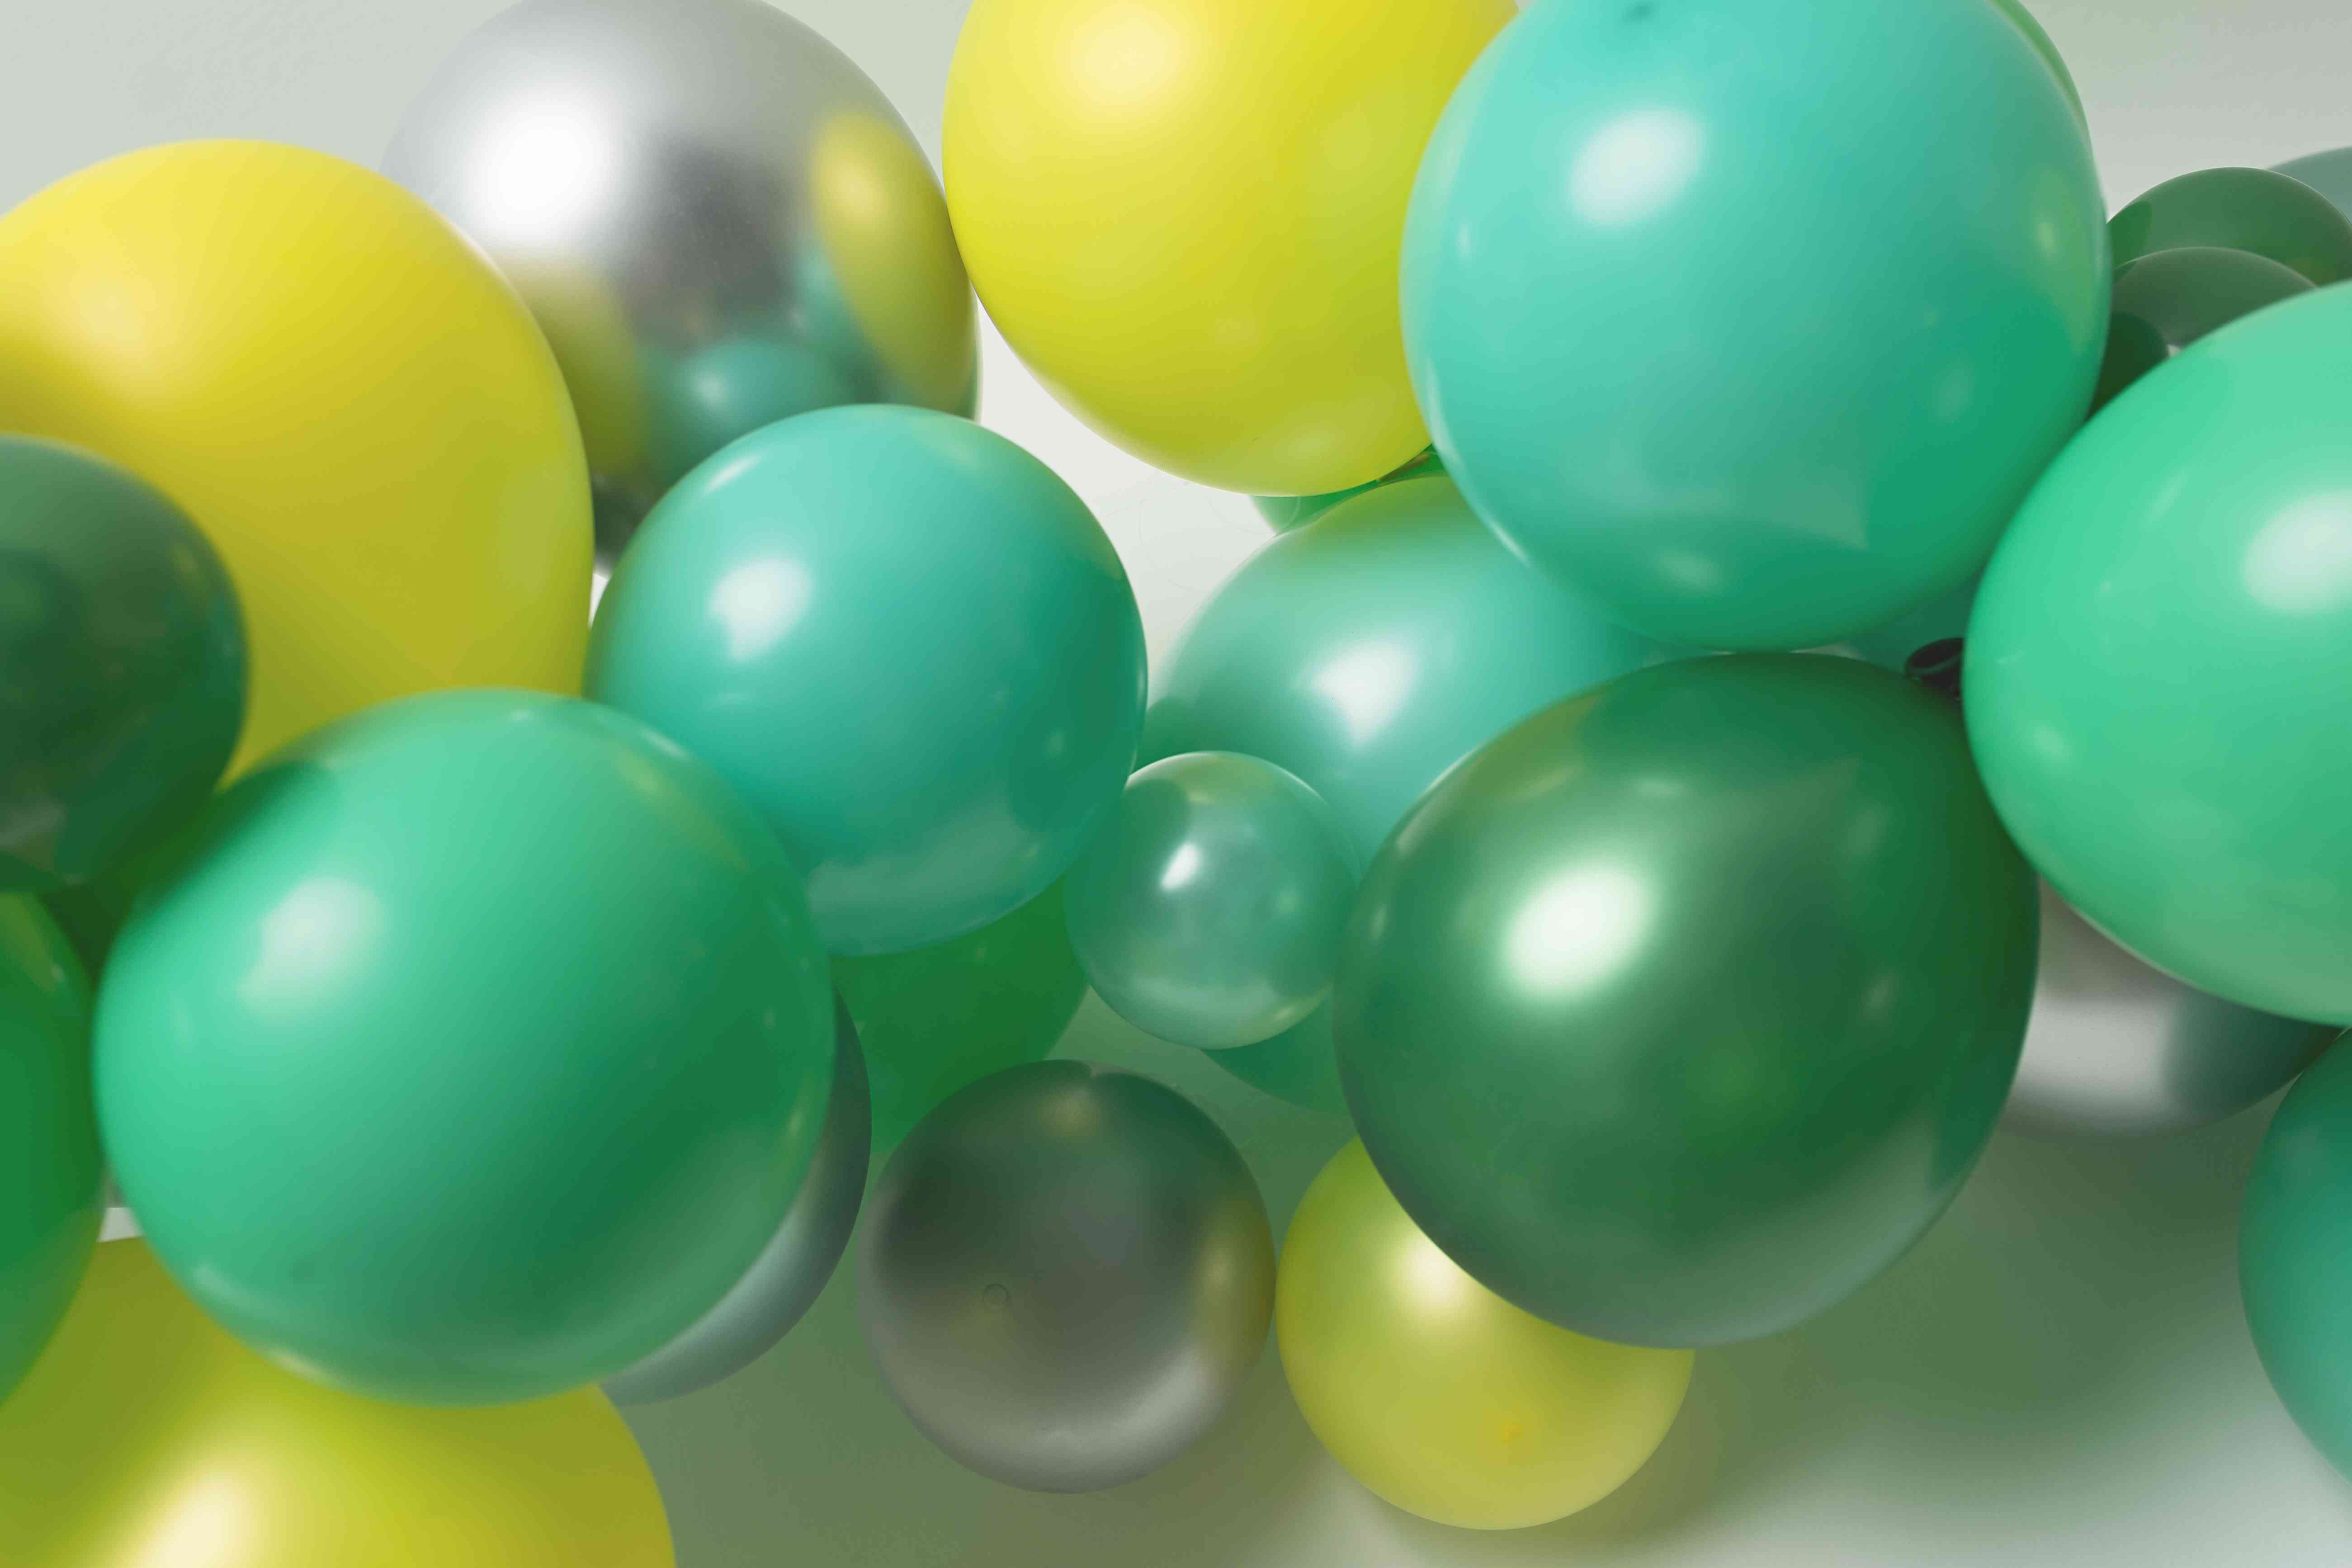 comment réaliser une grappe décoration de ballons organiques en latex